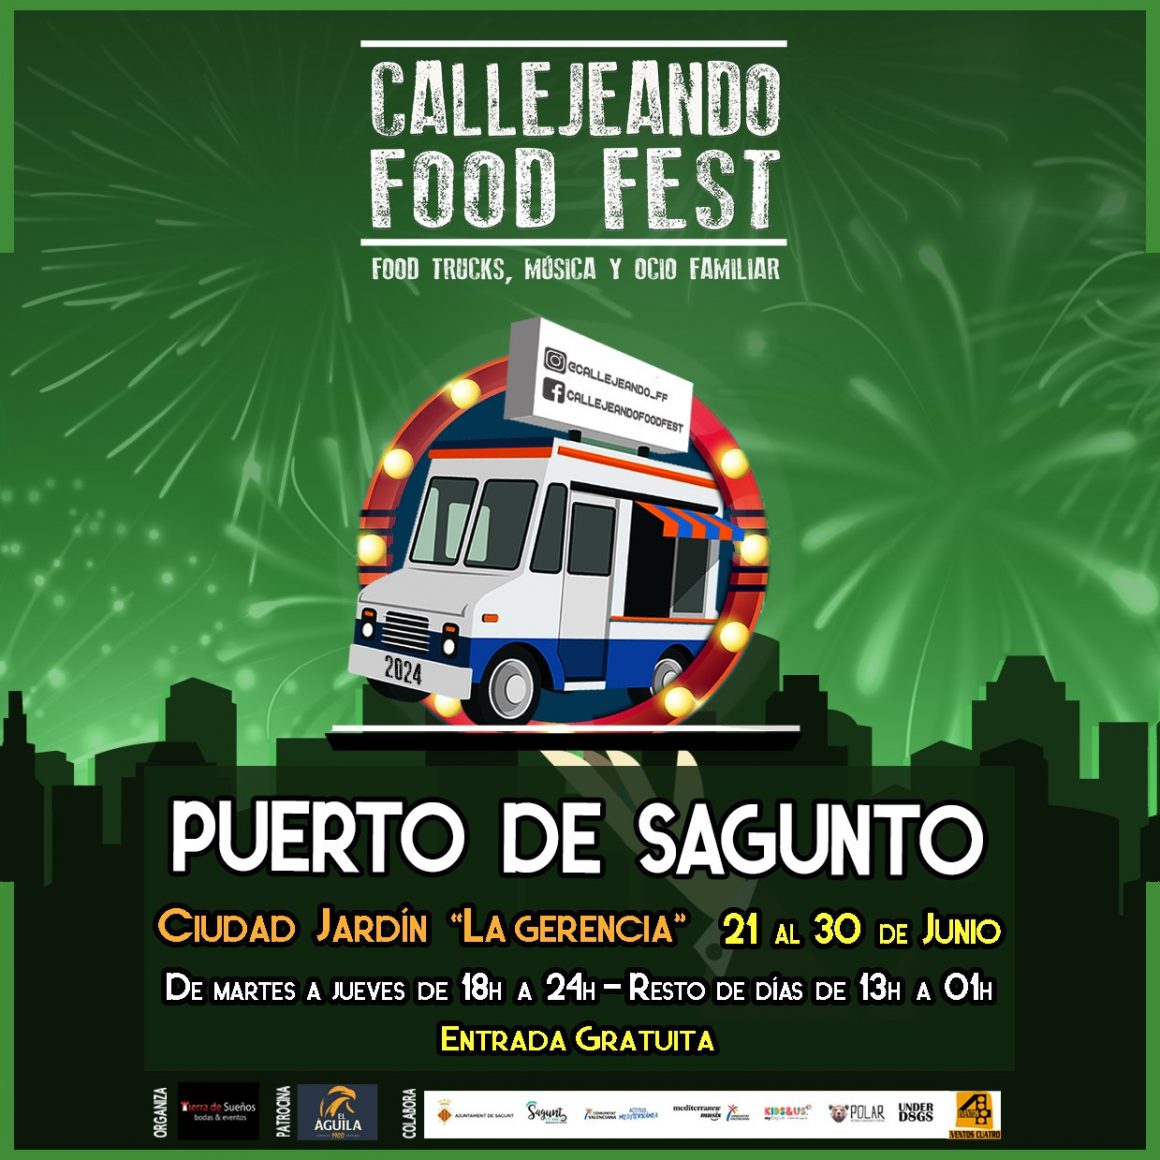 Callejeando food trucks Puerto Sagunto